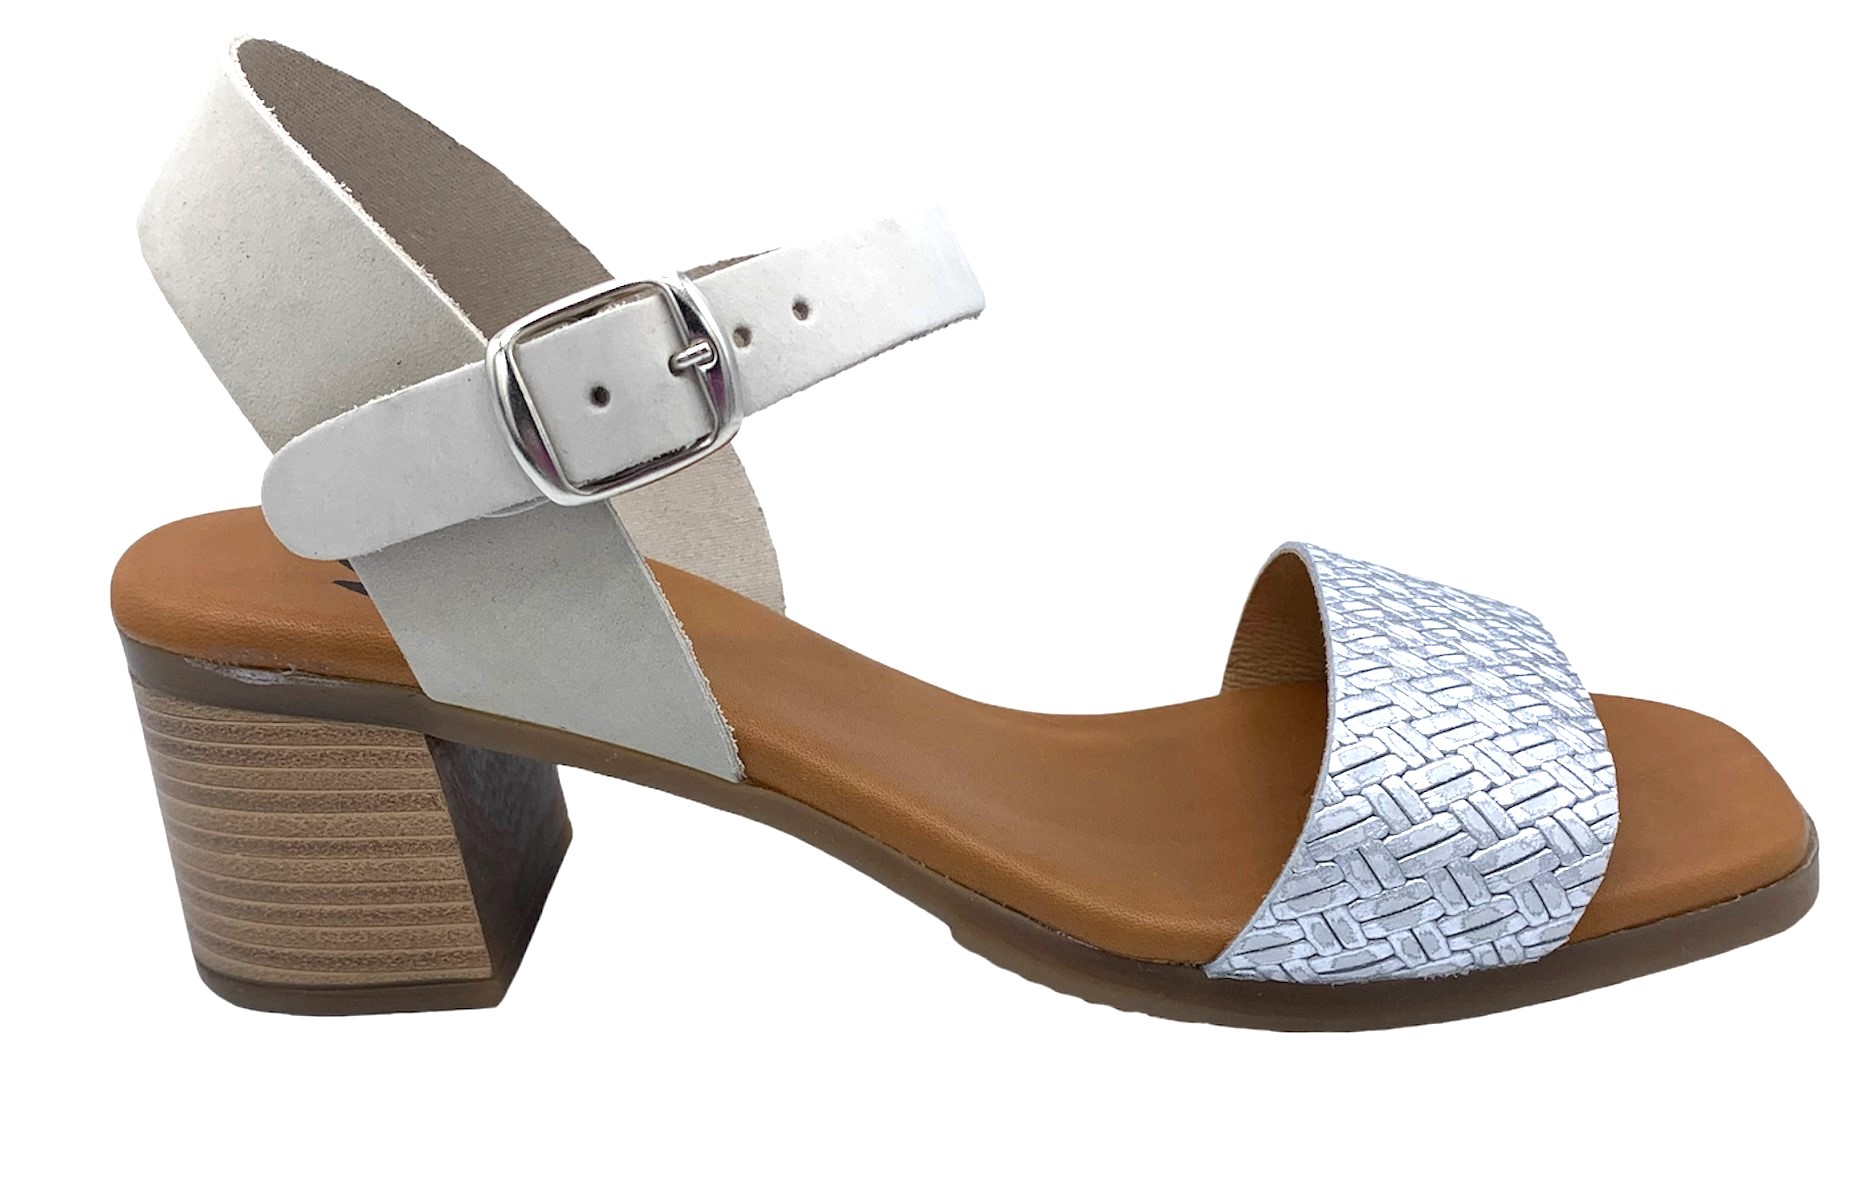 Dámské kožené sandále na podpatku MISSTIC 116004 sv.šedé Velikost: 41 (EU)